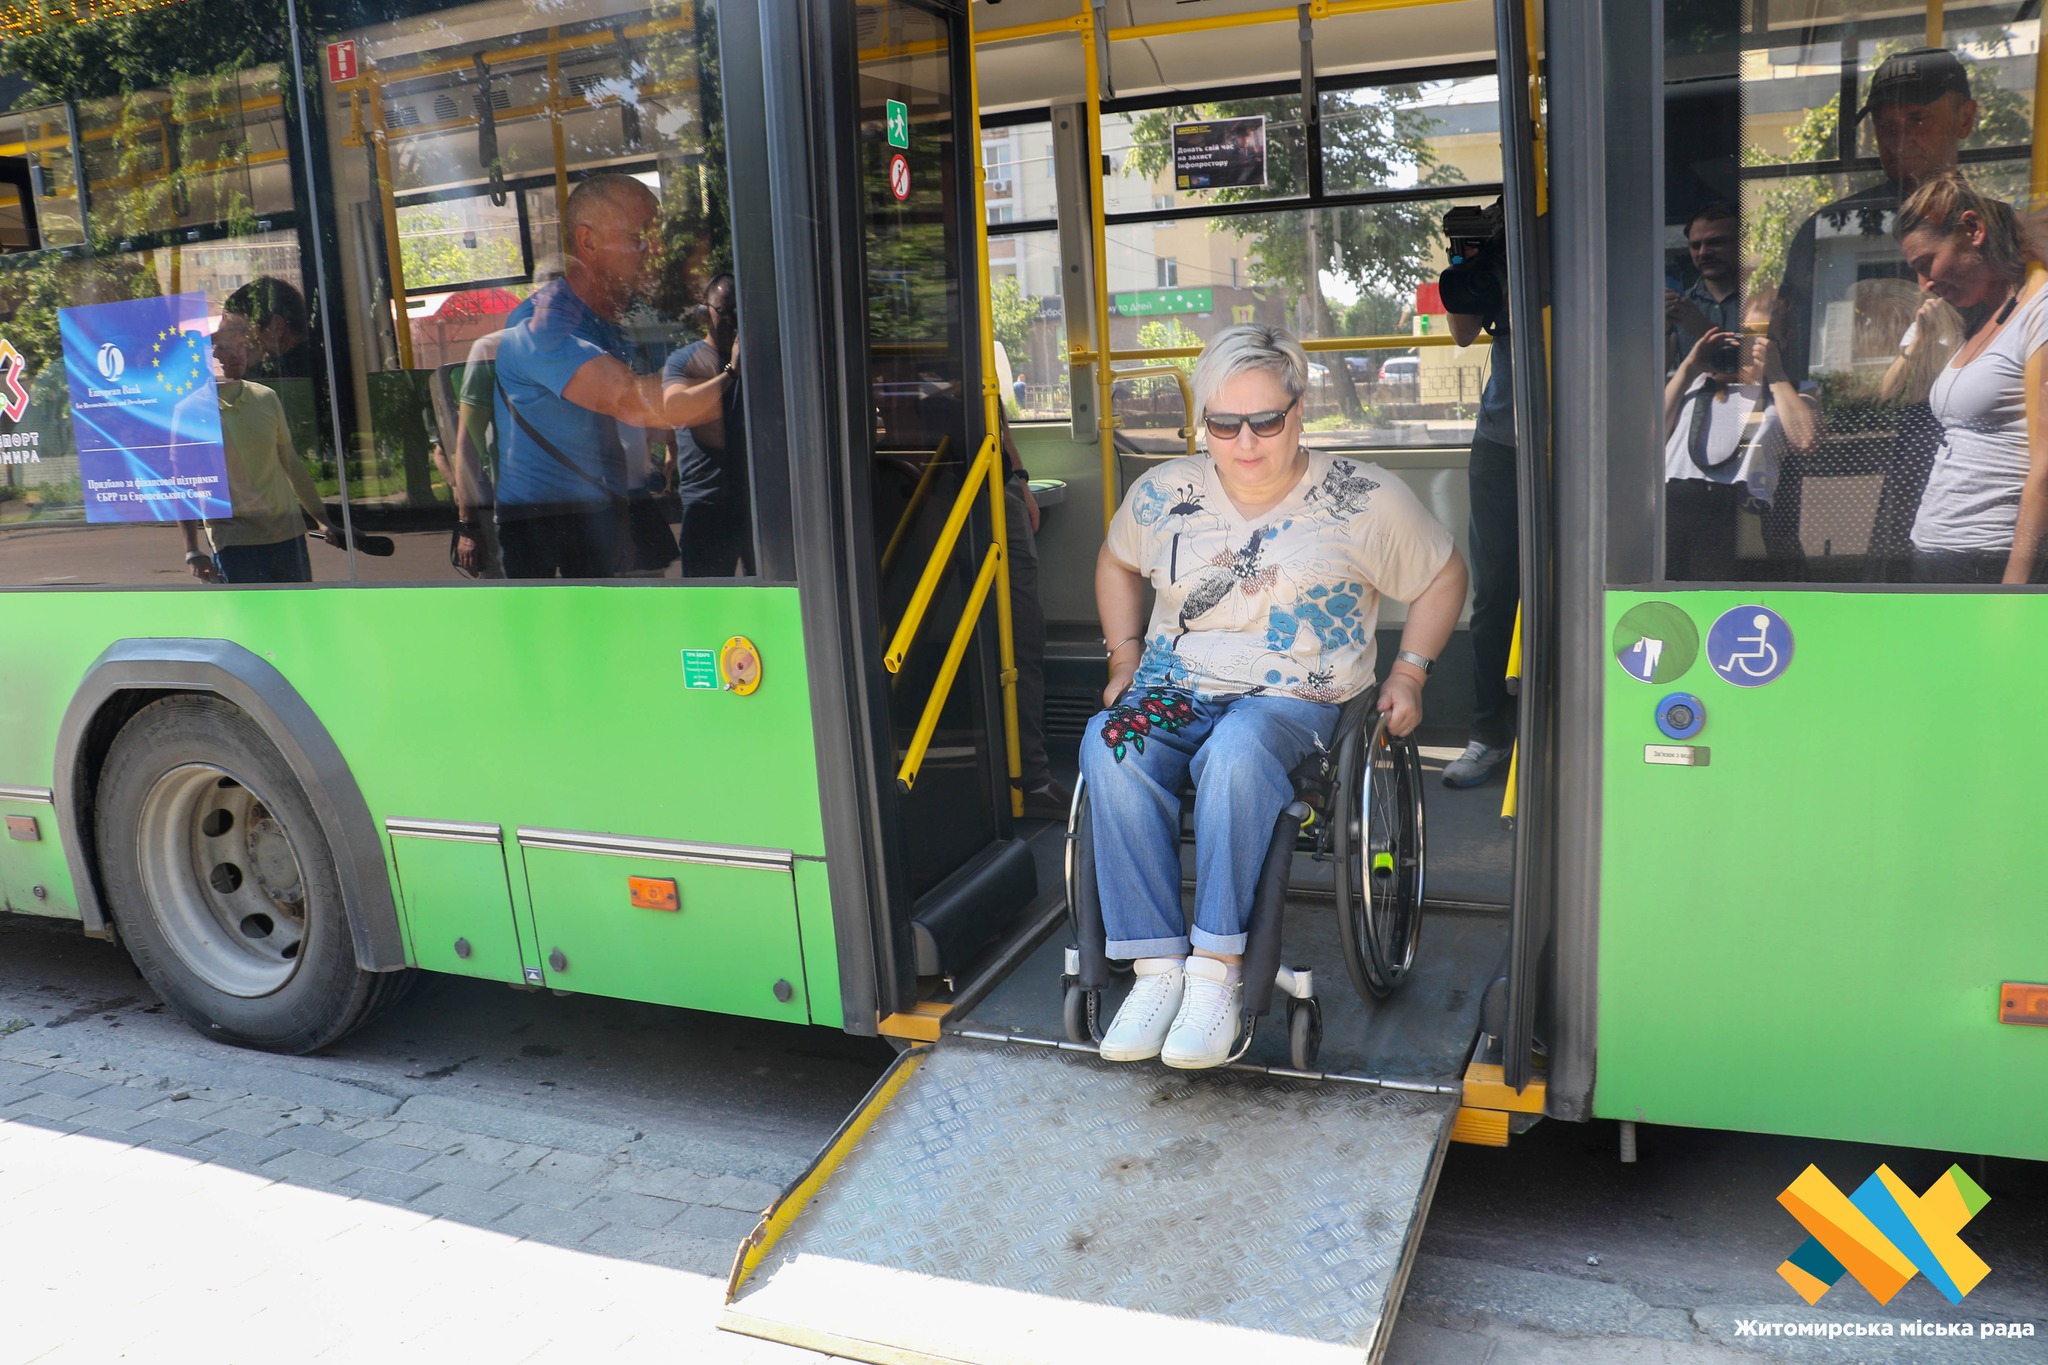 Транспортна доступність: 60% всього громадського транспорту відповідає стандартам інклюзивності.  Тролейбуси адаптовані на 78%